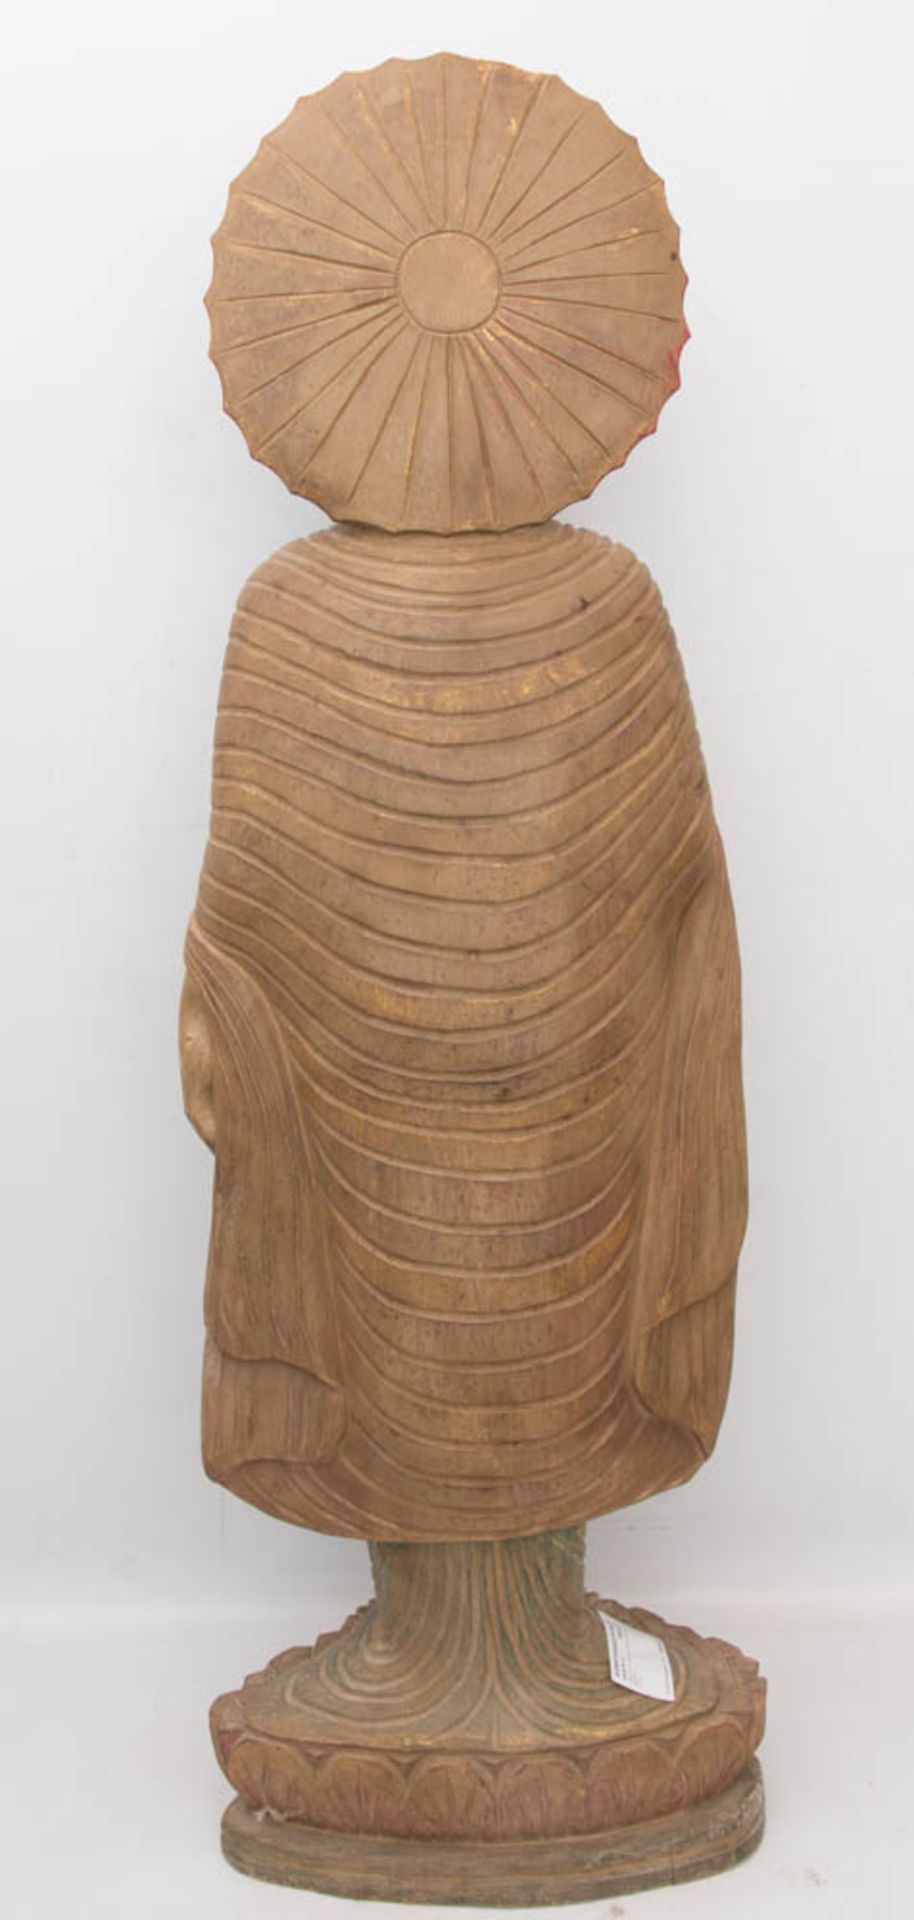 THAILÄNDISCHE BUDDHA STATUE, Holz, 20. Jh.Betende Skulptur in sehr gutem Zustand auf Sockel stehend. - Bild 4 aus 6